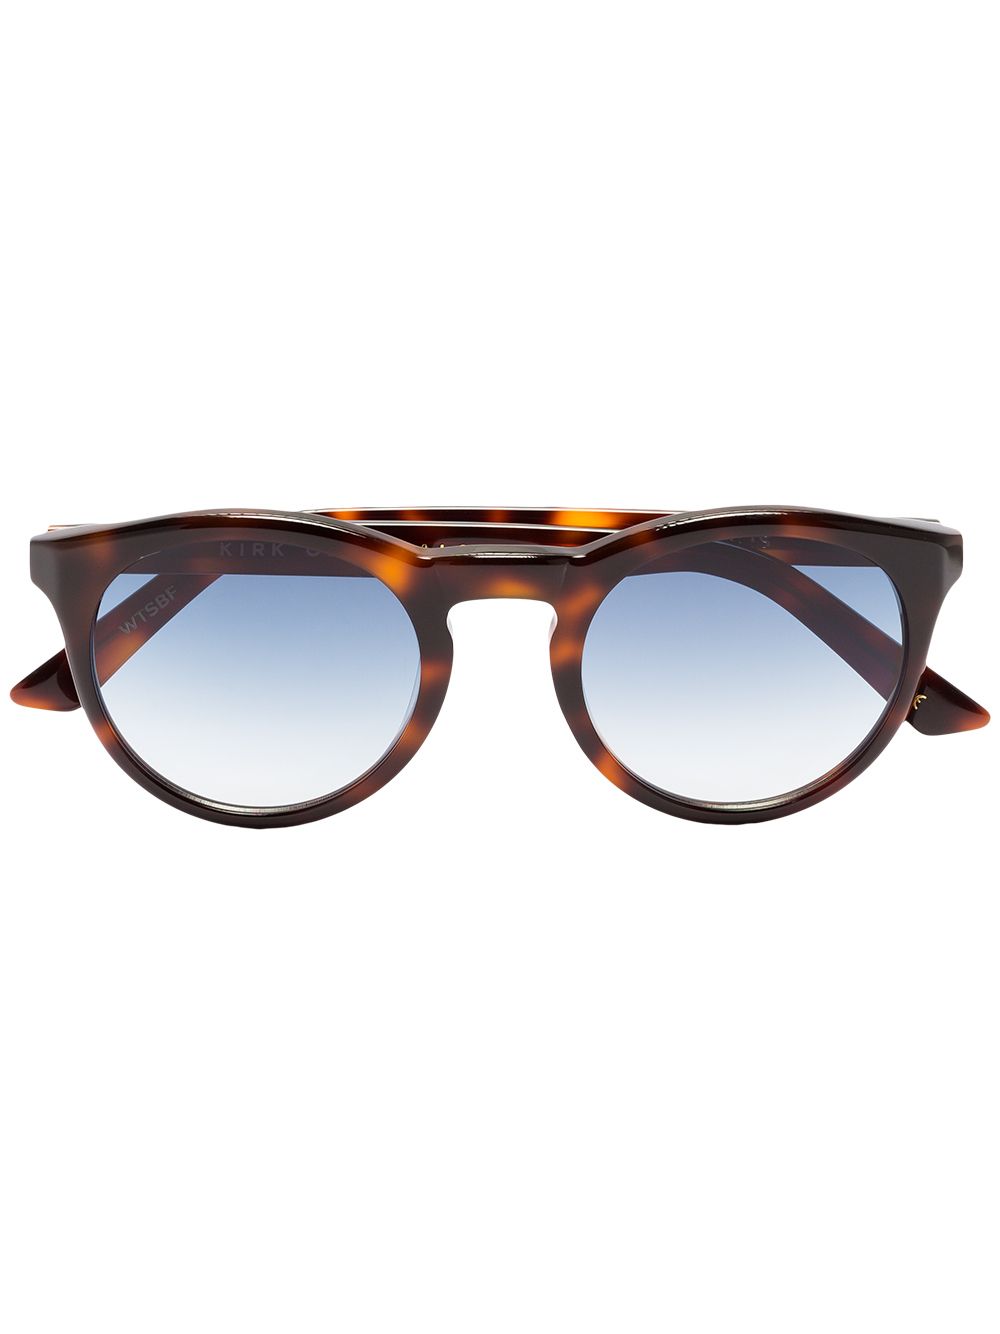 фото Kirk Originals солнцезащитные очки Watts в черепаховой расцветки